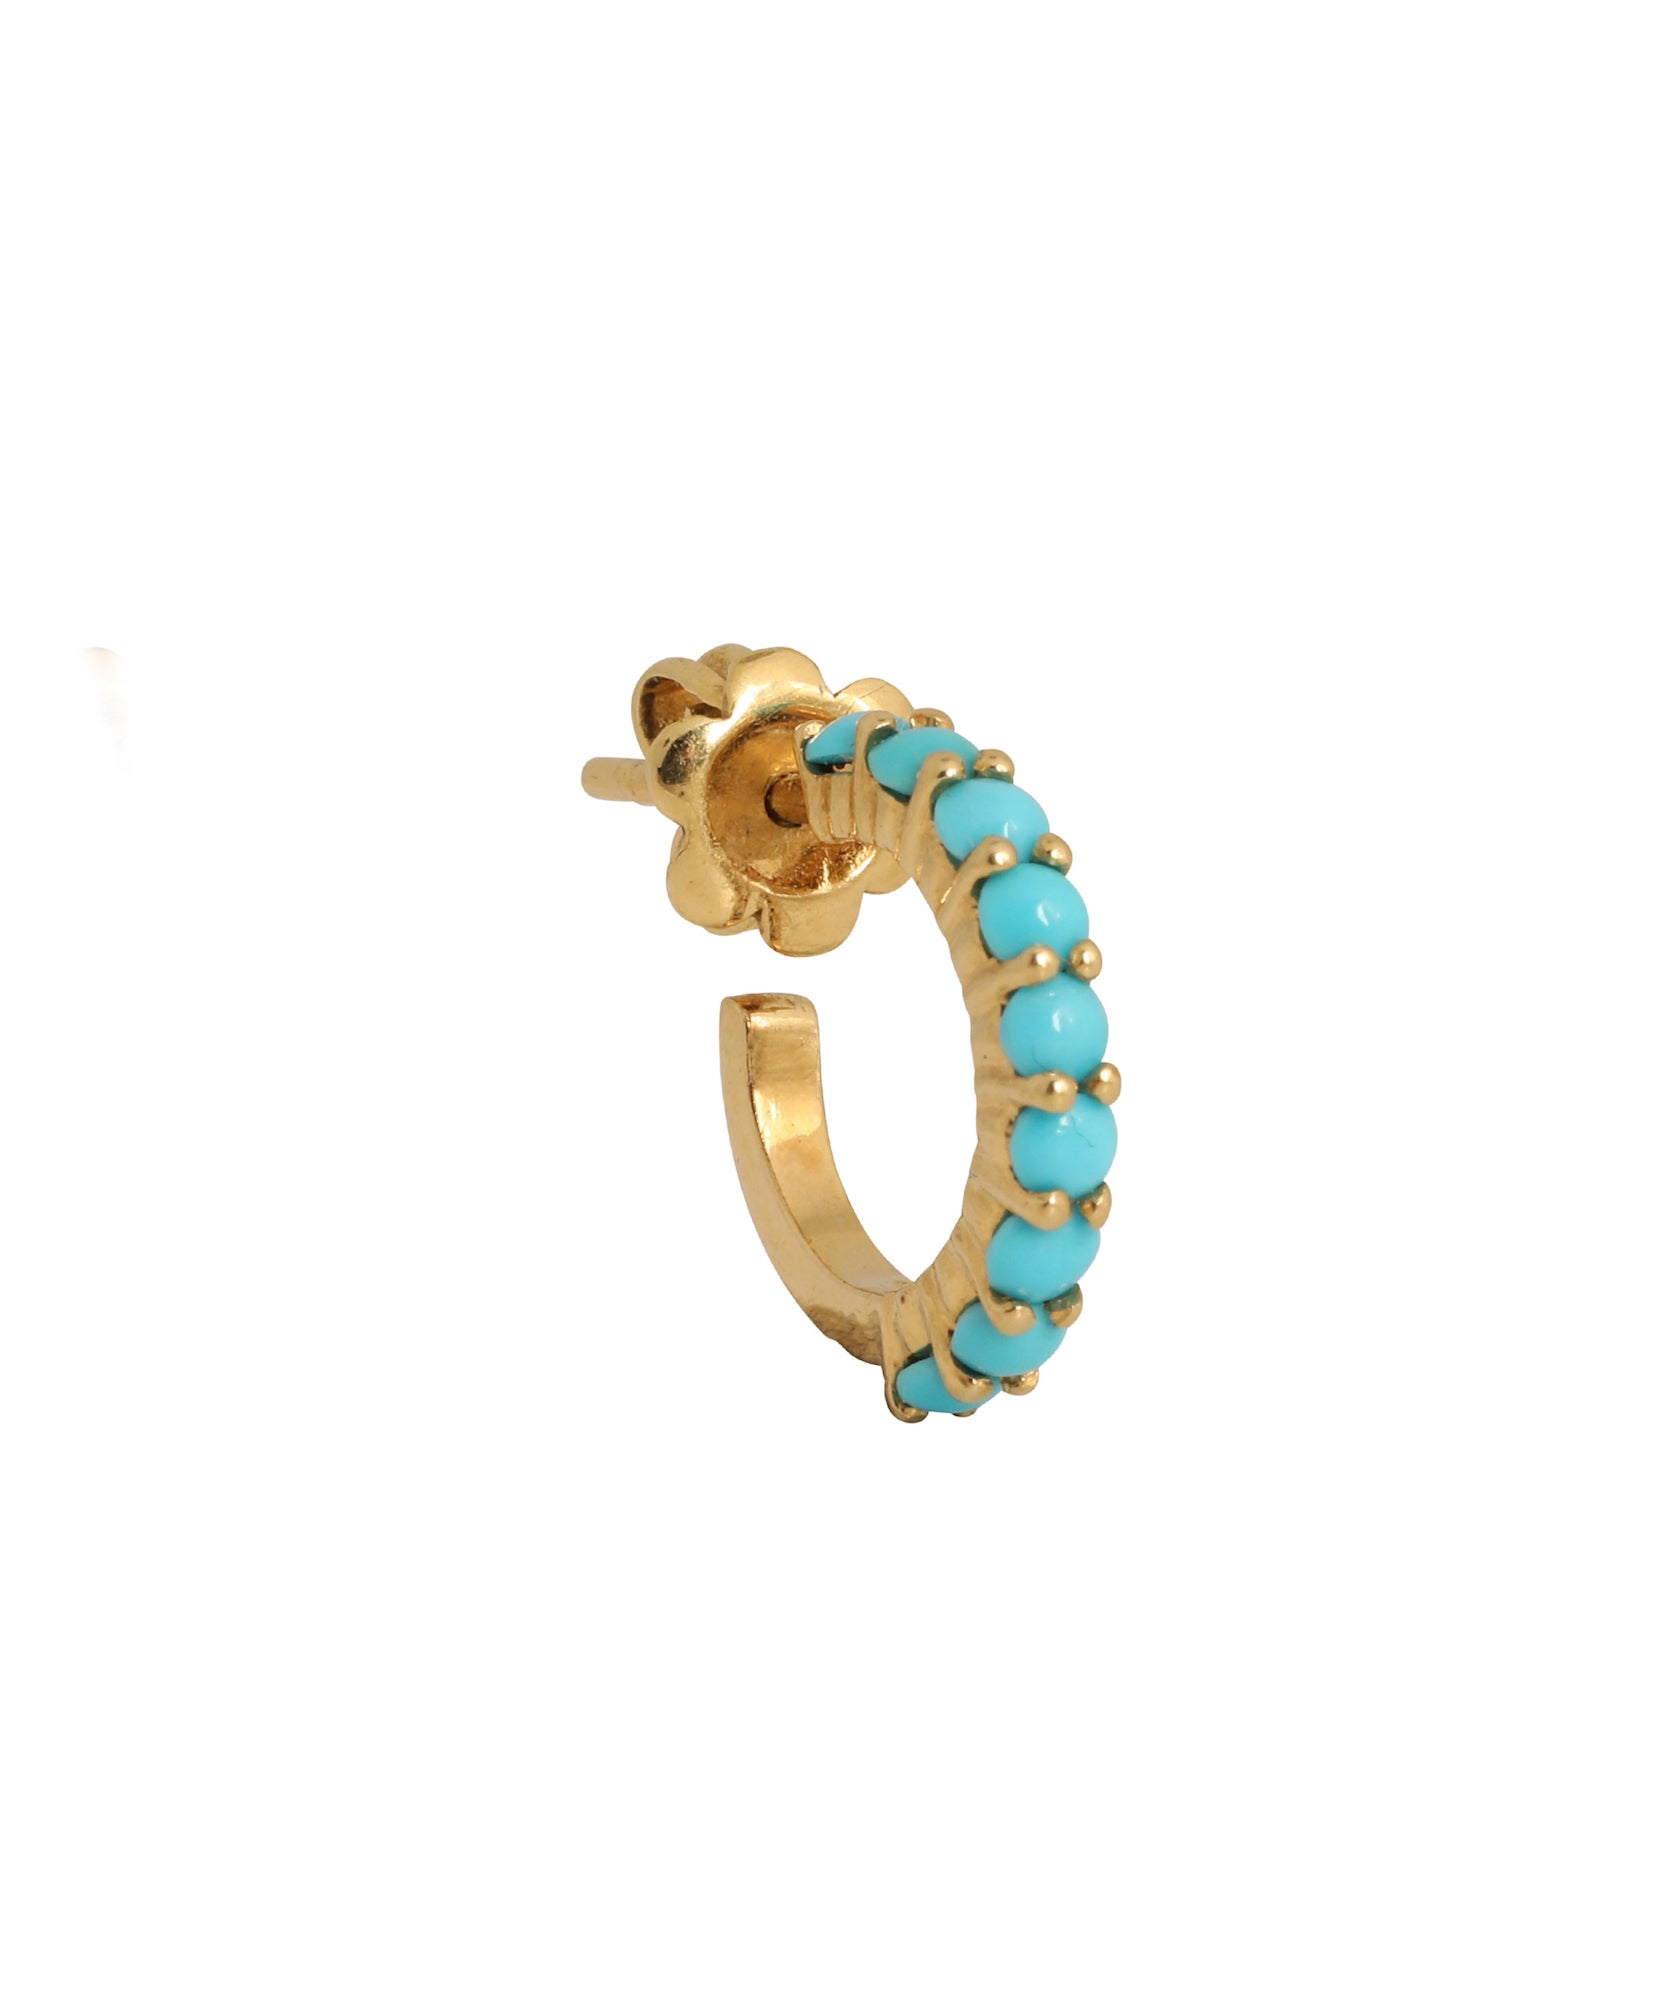 J by boghossian, gold, earring, hoop, turquoise